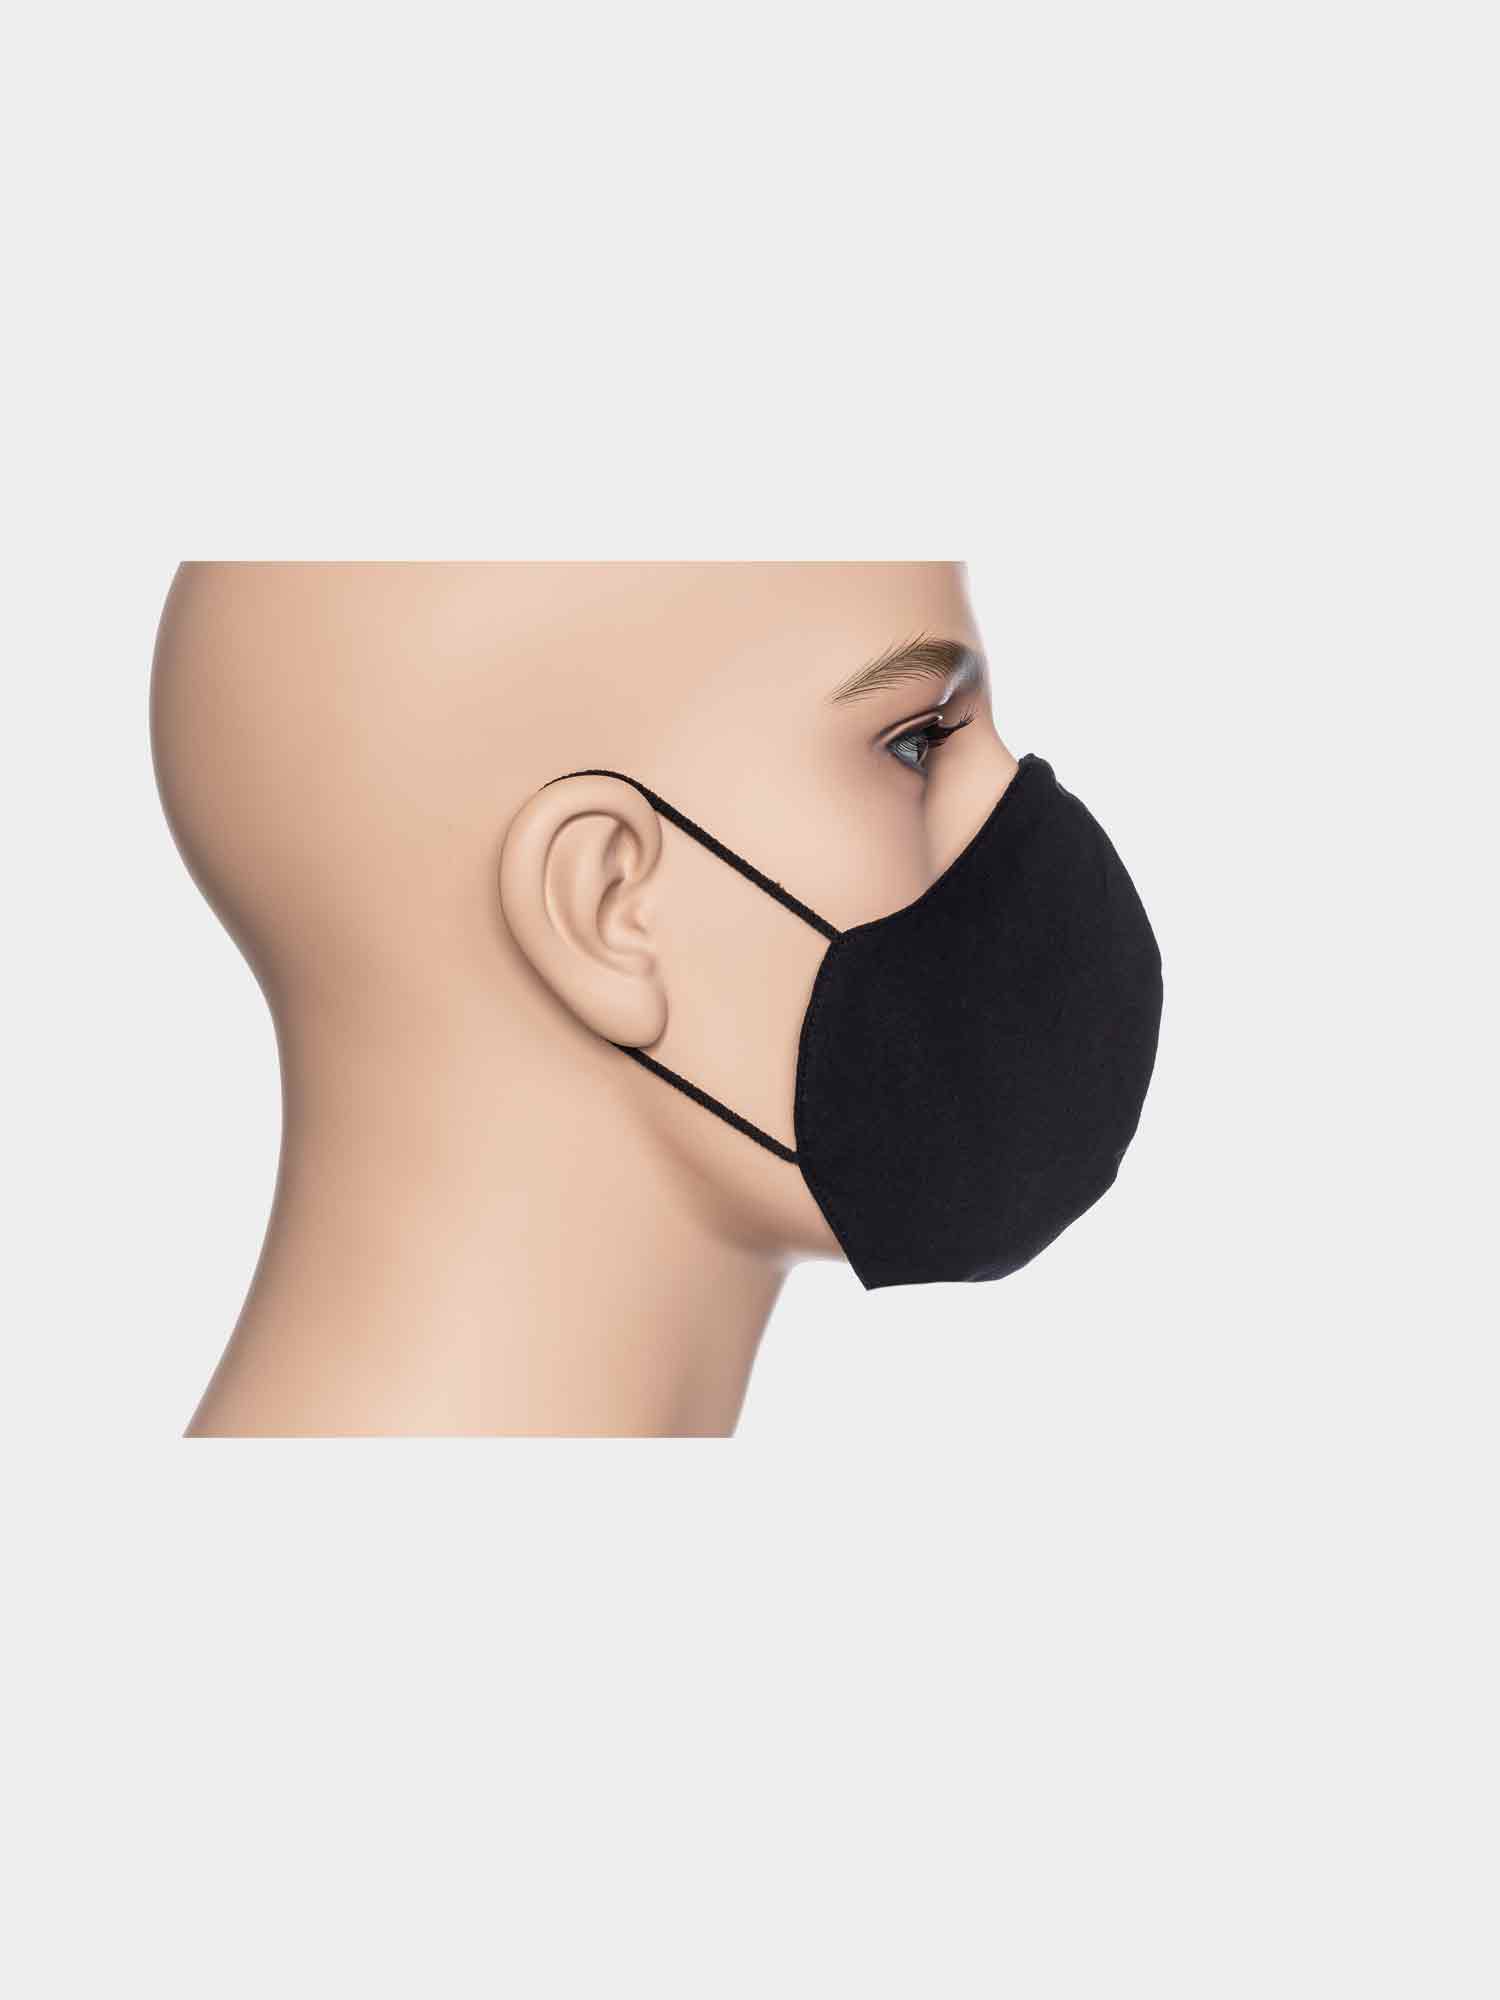 ATO Maske Uni Schwarz aus Bio Baumwolle